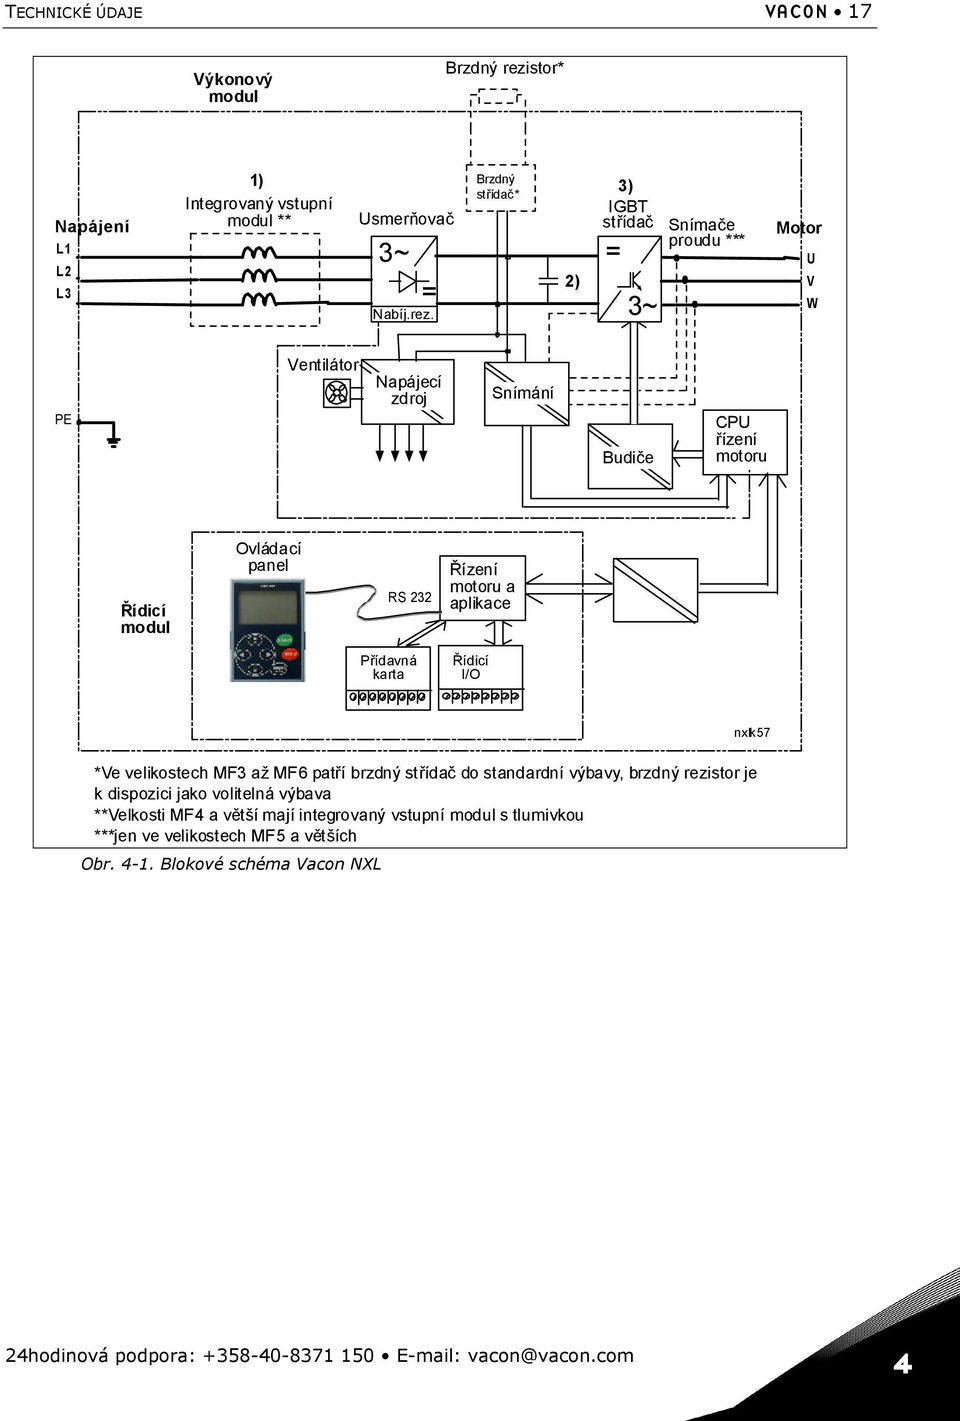 Brzdný střídač* 2) 3) IGBT střídač = 3~ Snímače proudu *** Motor U V W PE Ventilátor Napájecí zdroj Snímání Budiče CPU řízení motoru Řídicí modul Ovládací panel RS 232